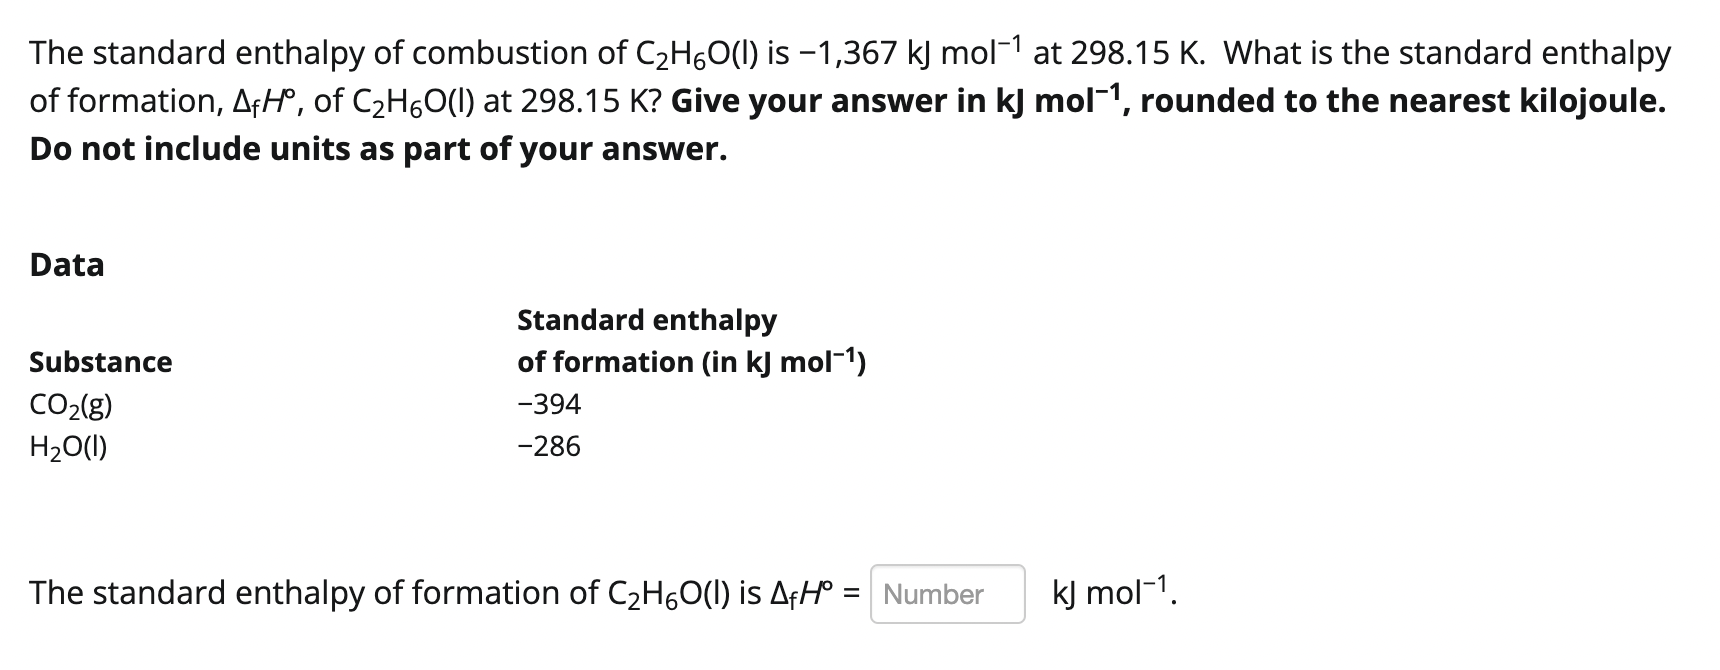 Phản ứng giữa C2H6O và K: Khám phá sâu về Ethanol và Potassium